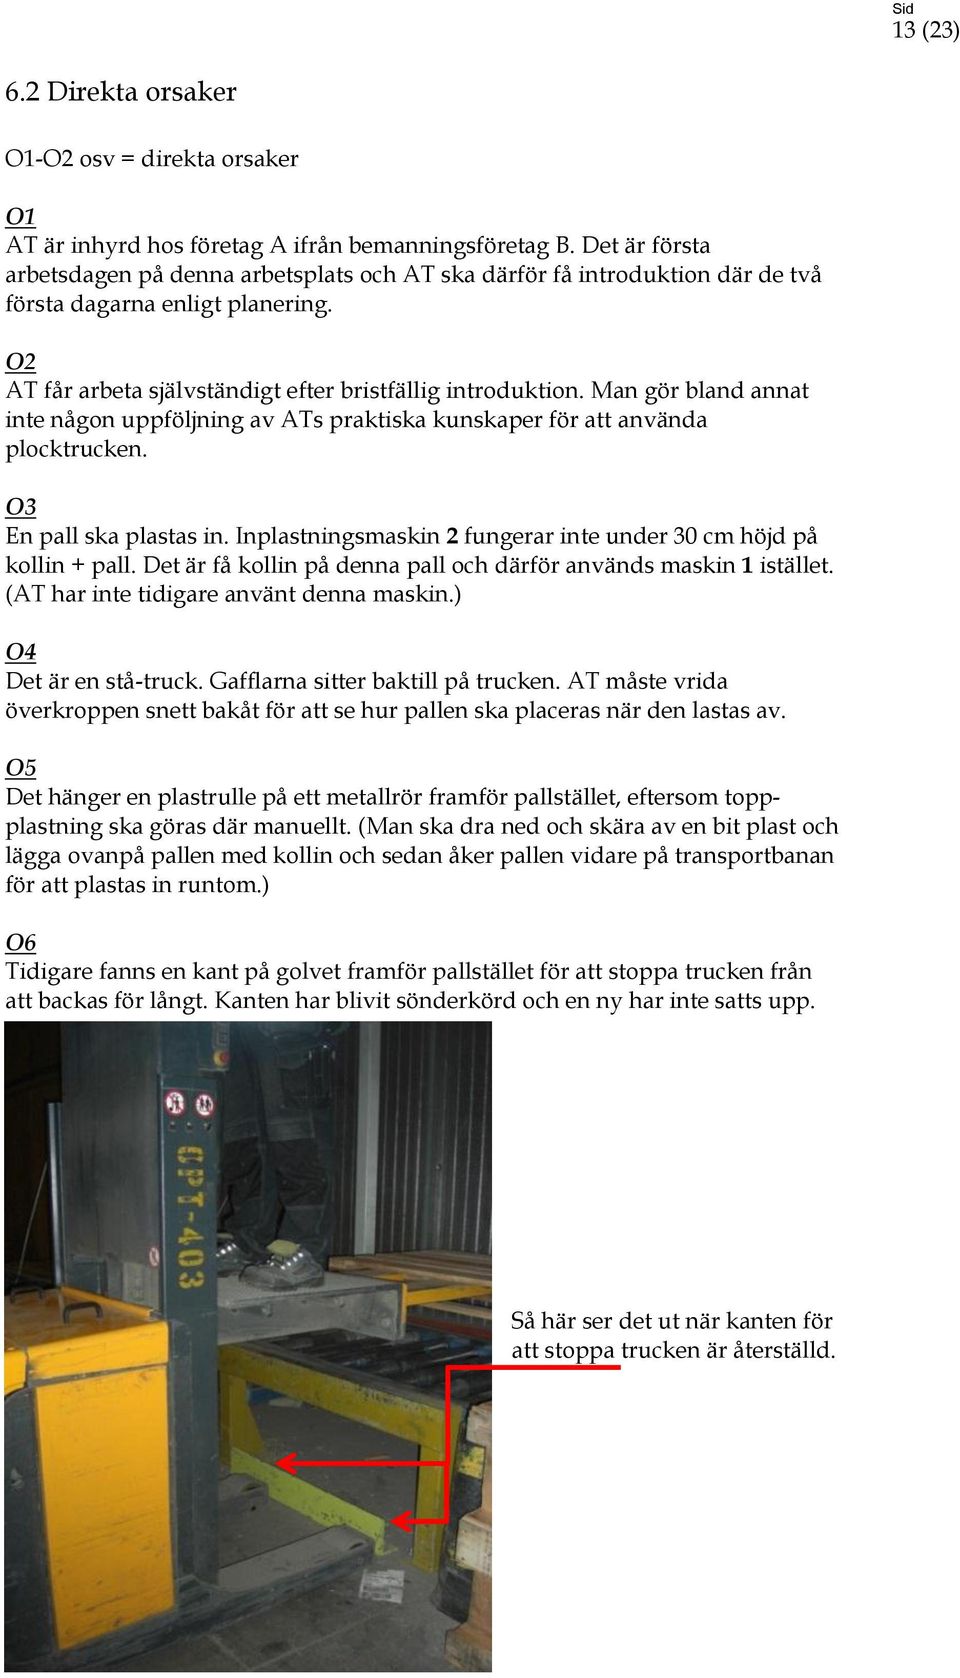 Truckolycka i fryslager, Stockholm PDF Free Download